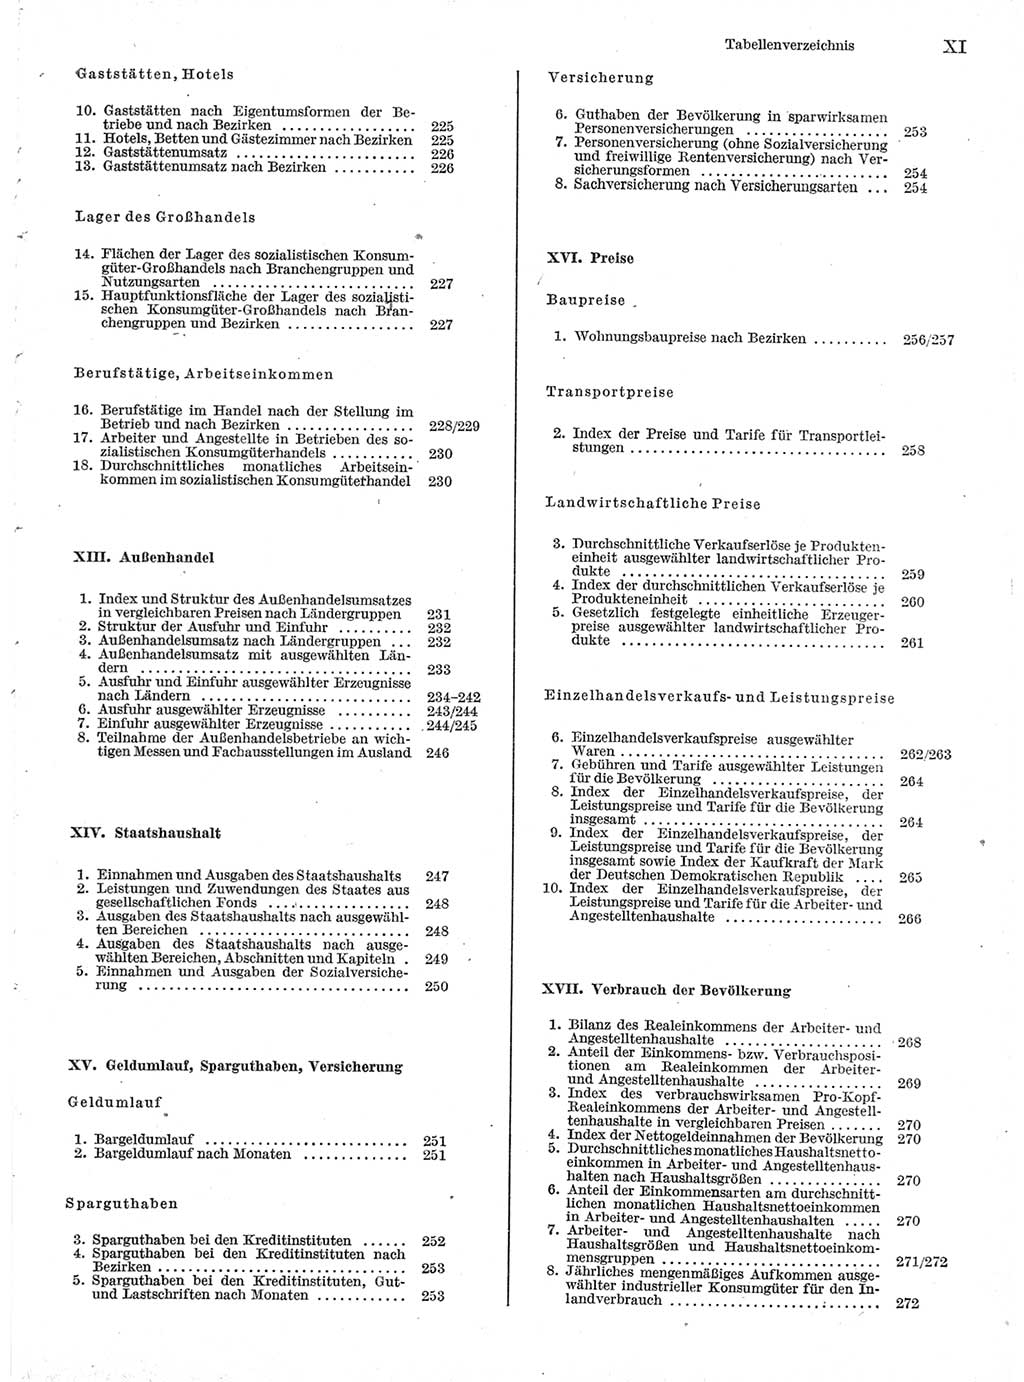 Statistisches Jahrbuch der Deutschen Demokratischen Republik (DDR) 1978, Seite 11 (Stat. Jb. DDR 1978, S. 11)